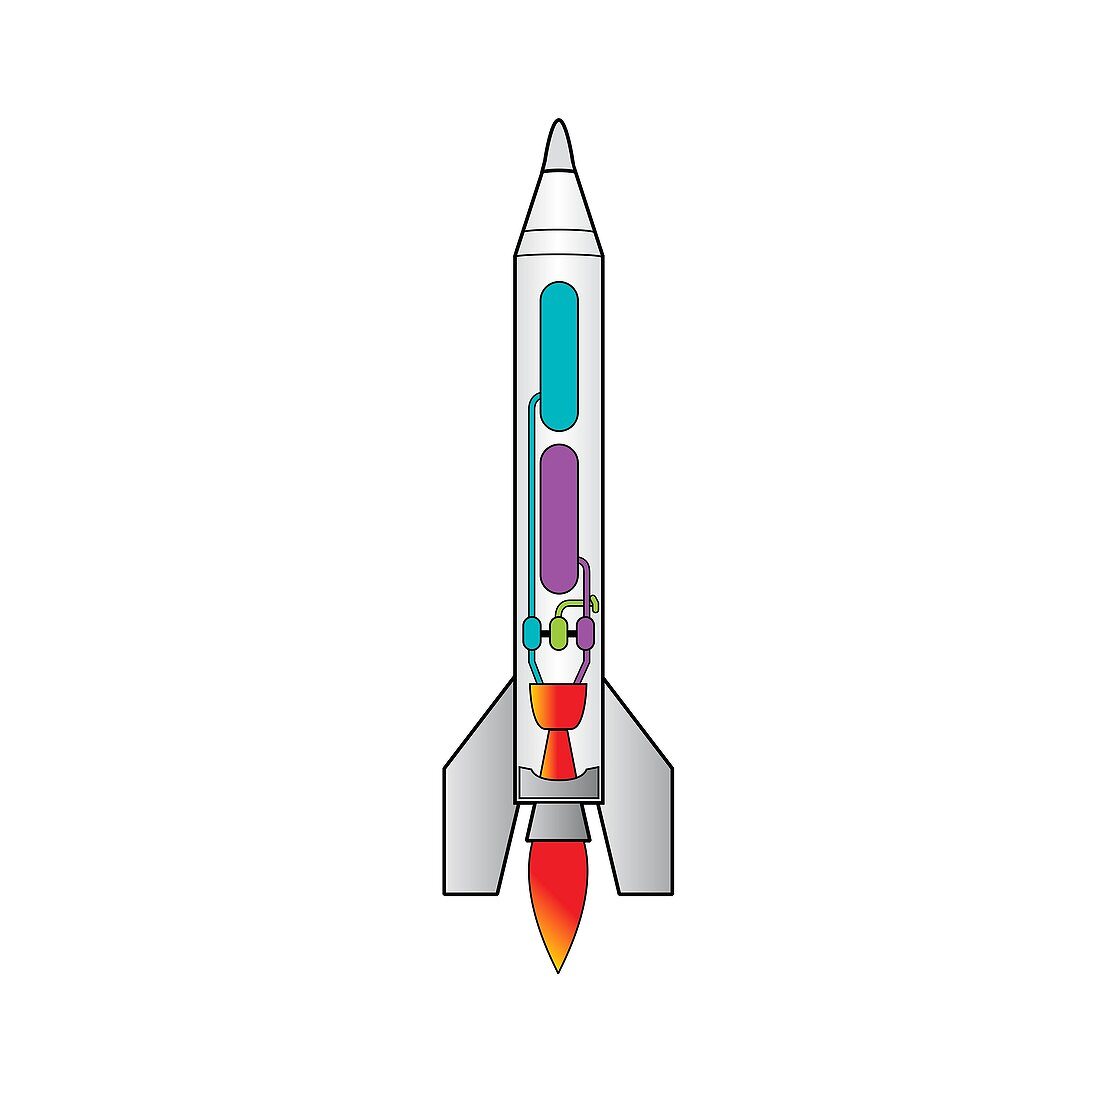 Rocket, illustration